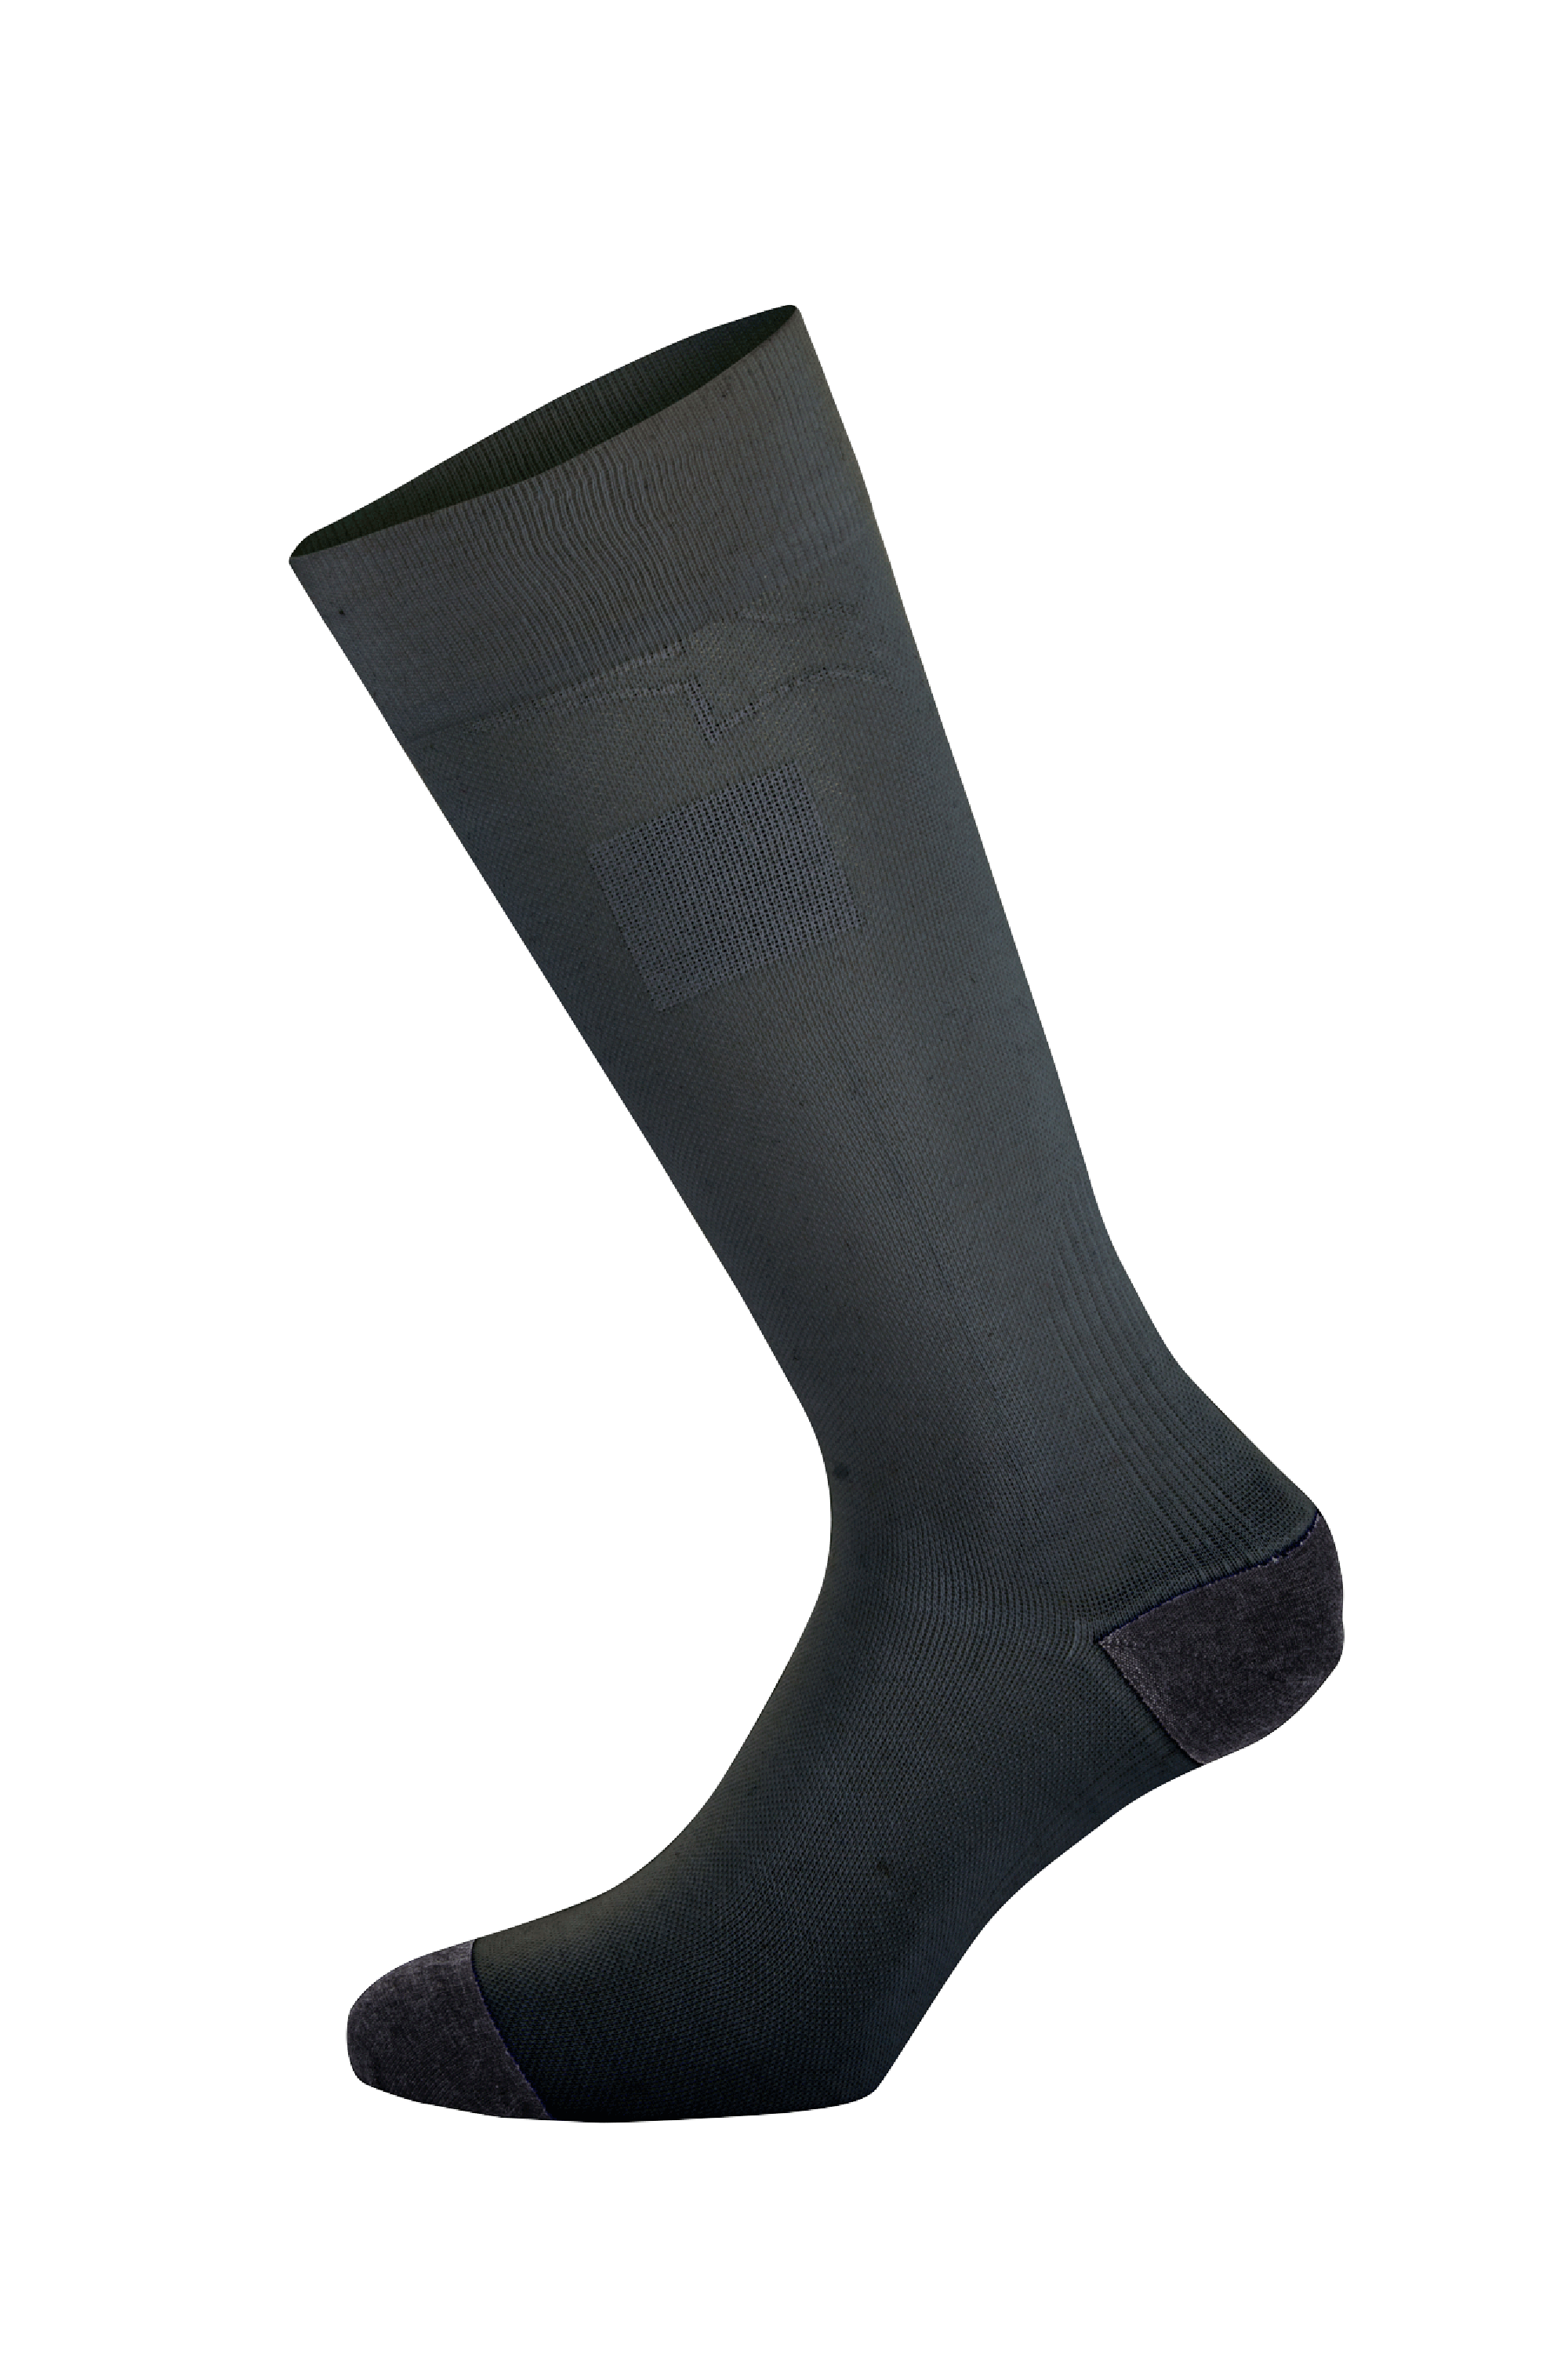 ZX V4 Socks Alpinestars | Alpinestars® Official Site